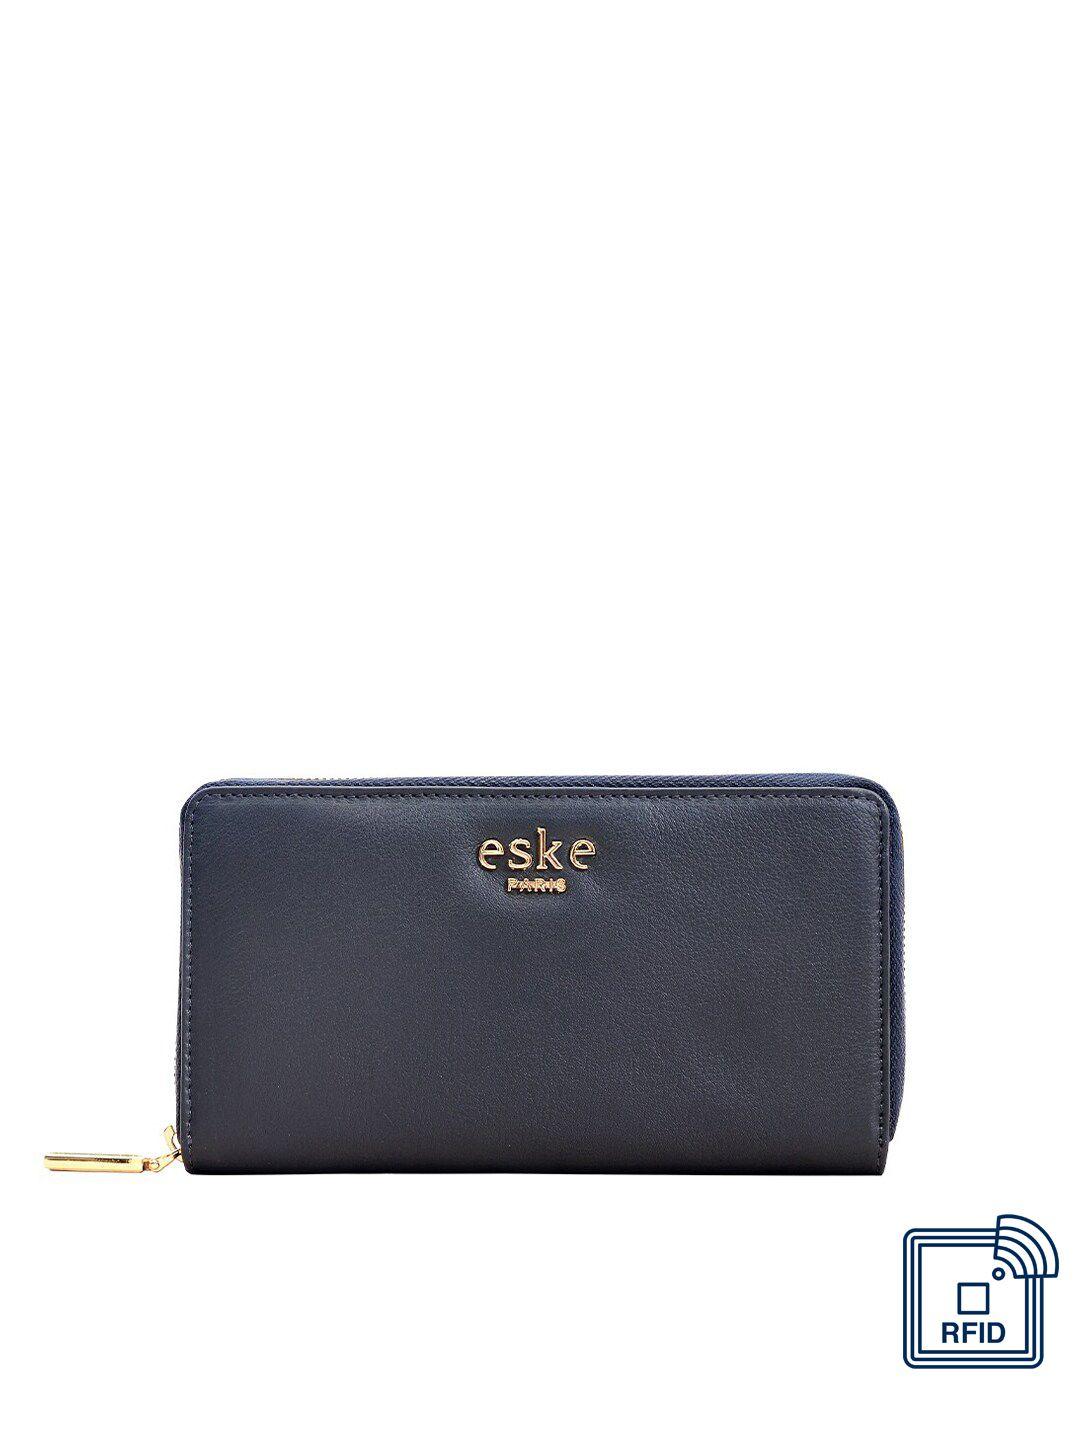 eske-women-navy-blue-textured-leather-zip-around-wallet